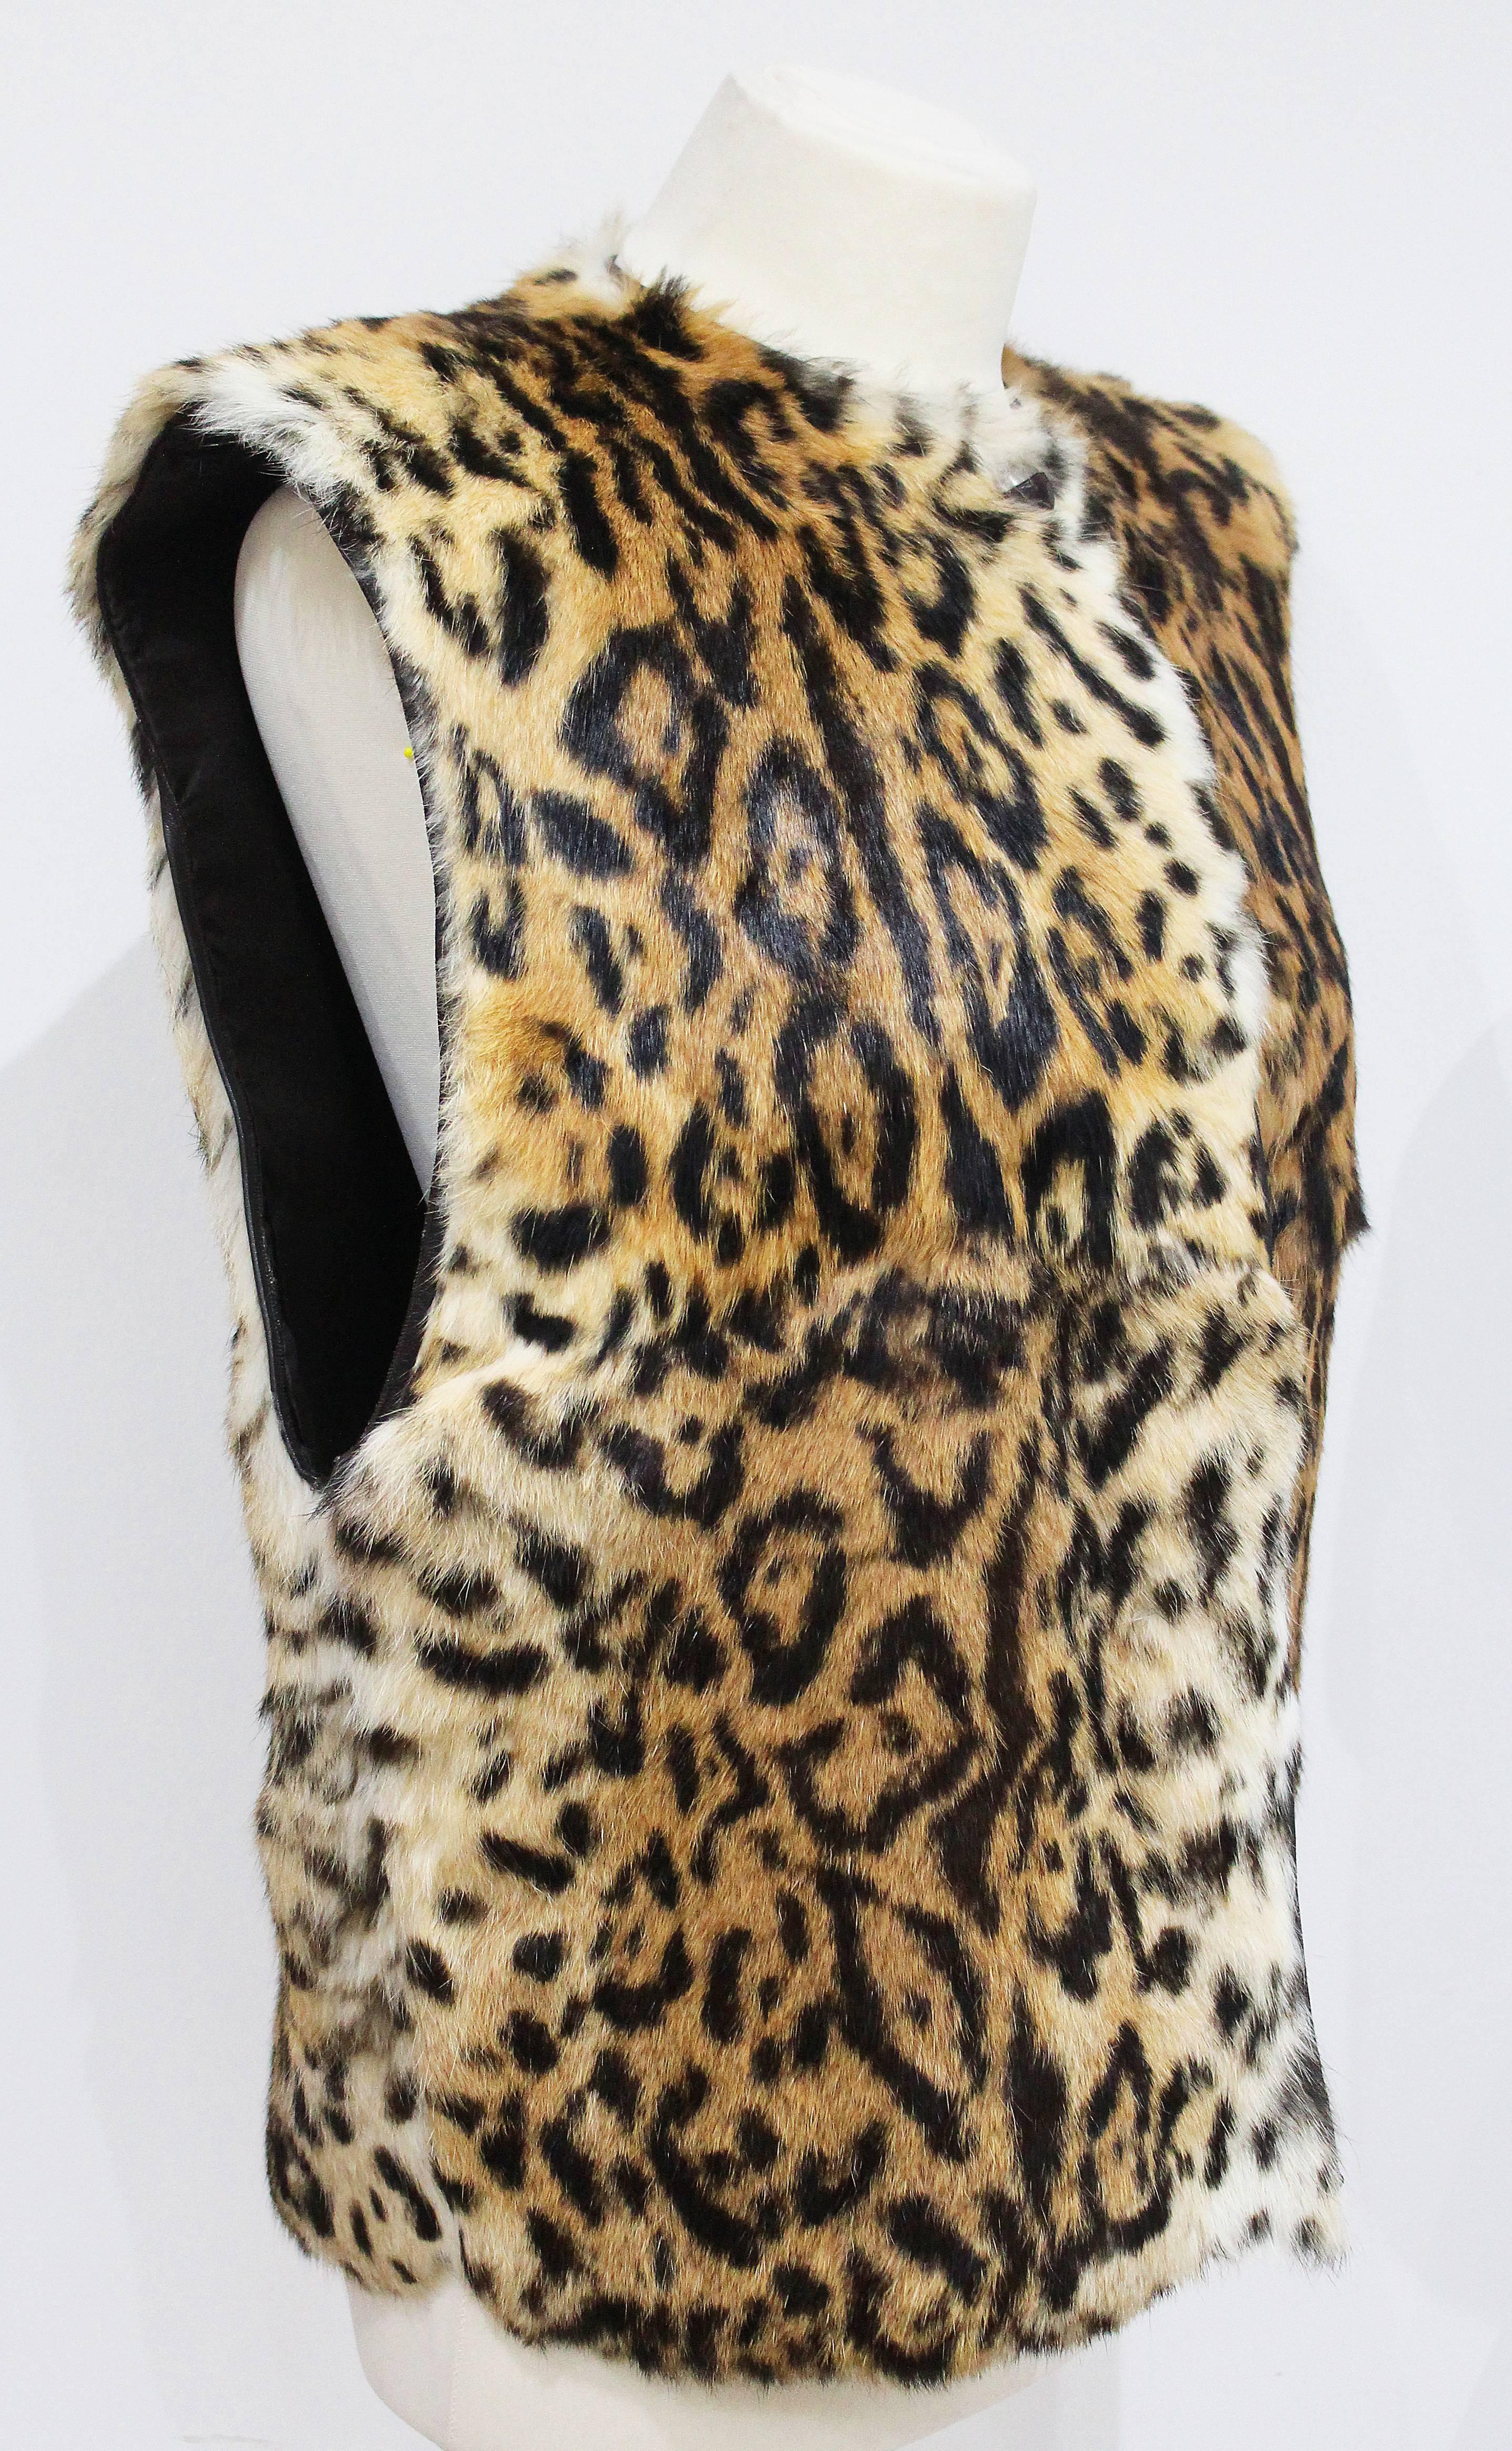 Dies ist ein frühes Pelzgilet von Gianni Versace mit Leopardenmuster aus den 1980er Jahren. Die Halskette ist aus weichem Kaninchenfell und hat einen Verschluss mit 2 Lederknöpfen. Der Schnitt des Gillet ist sehr kastenförmig und übergroß.